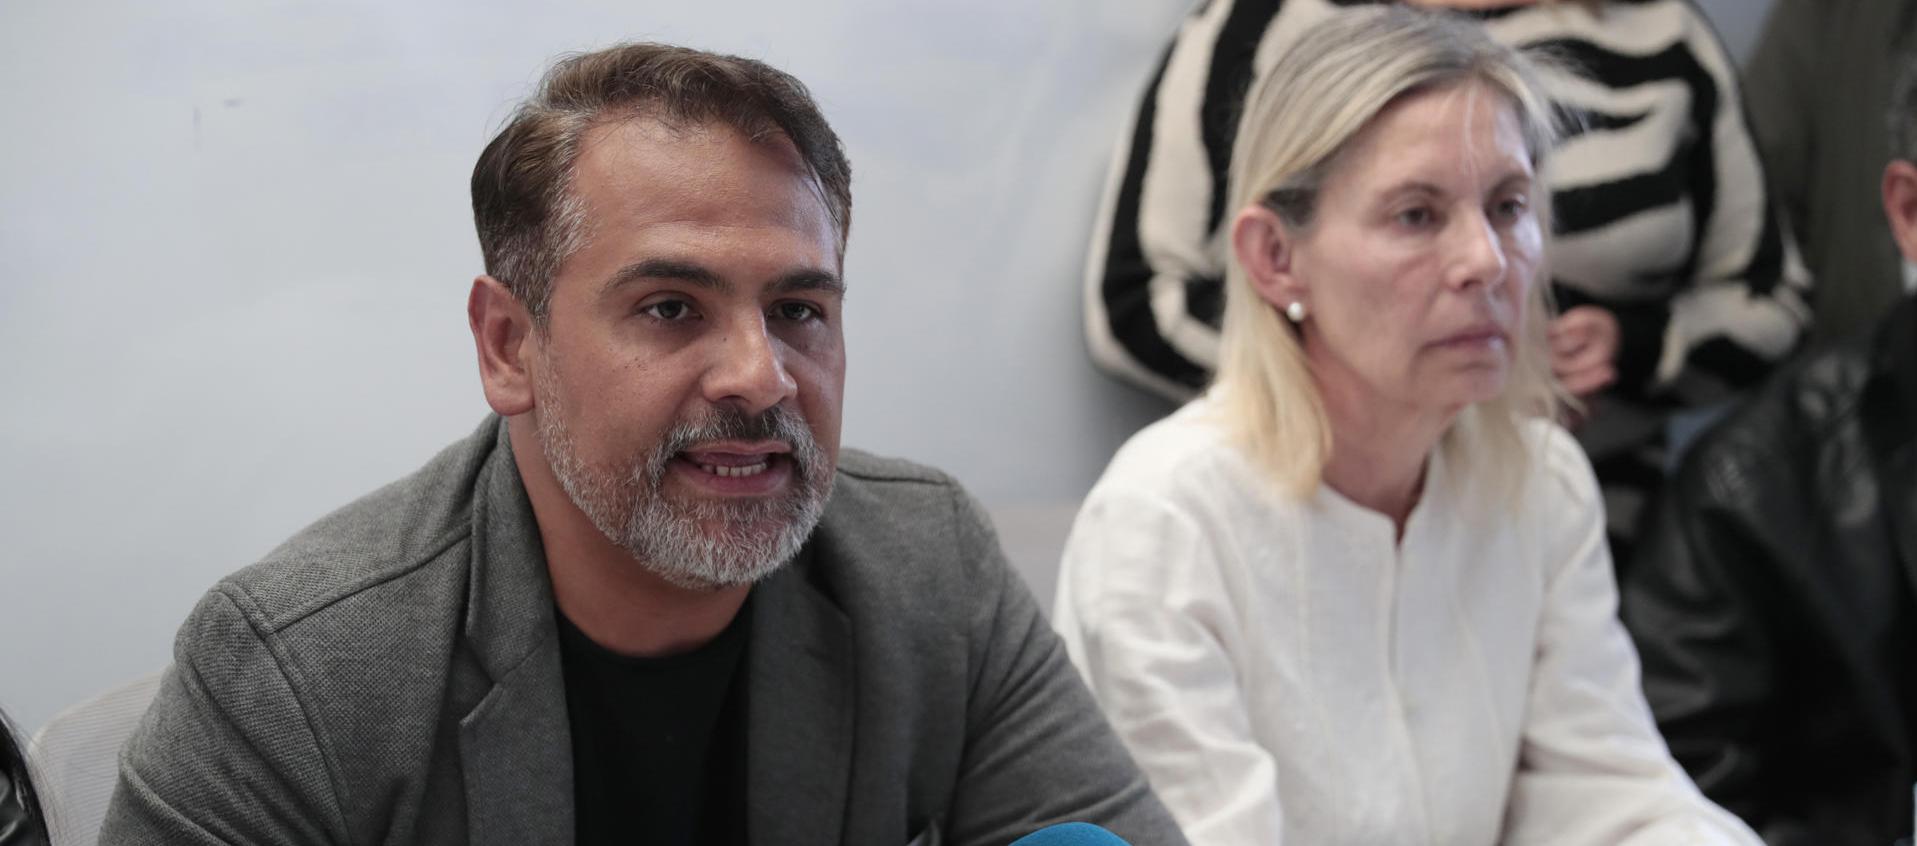 El coordinador político de la plataforma política Vente Venezuela, Mauricio Baquero.